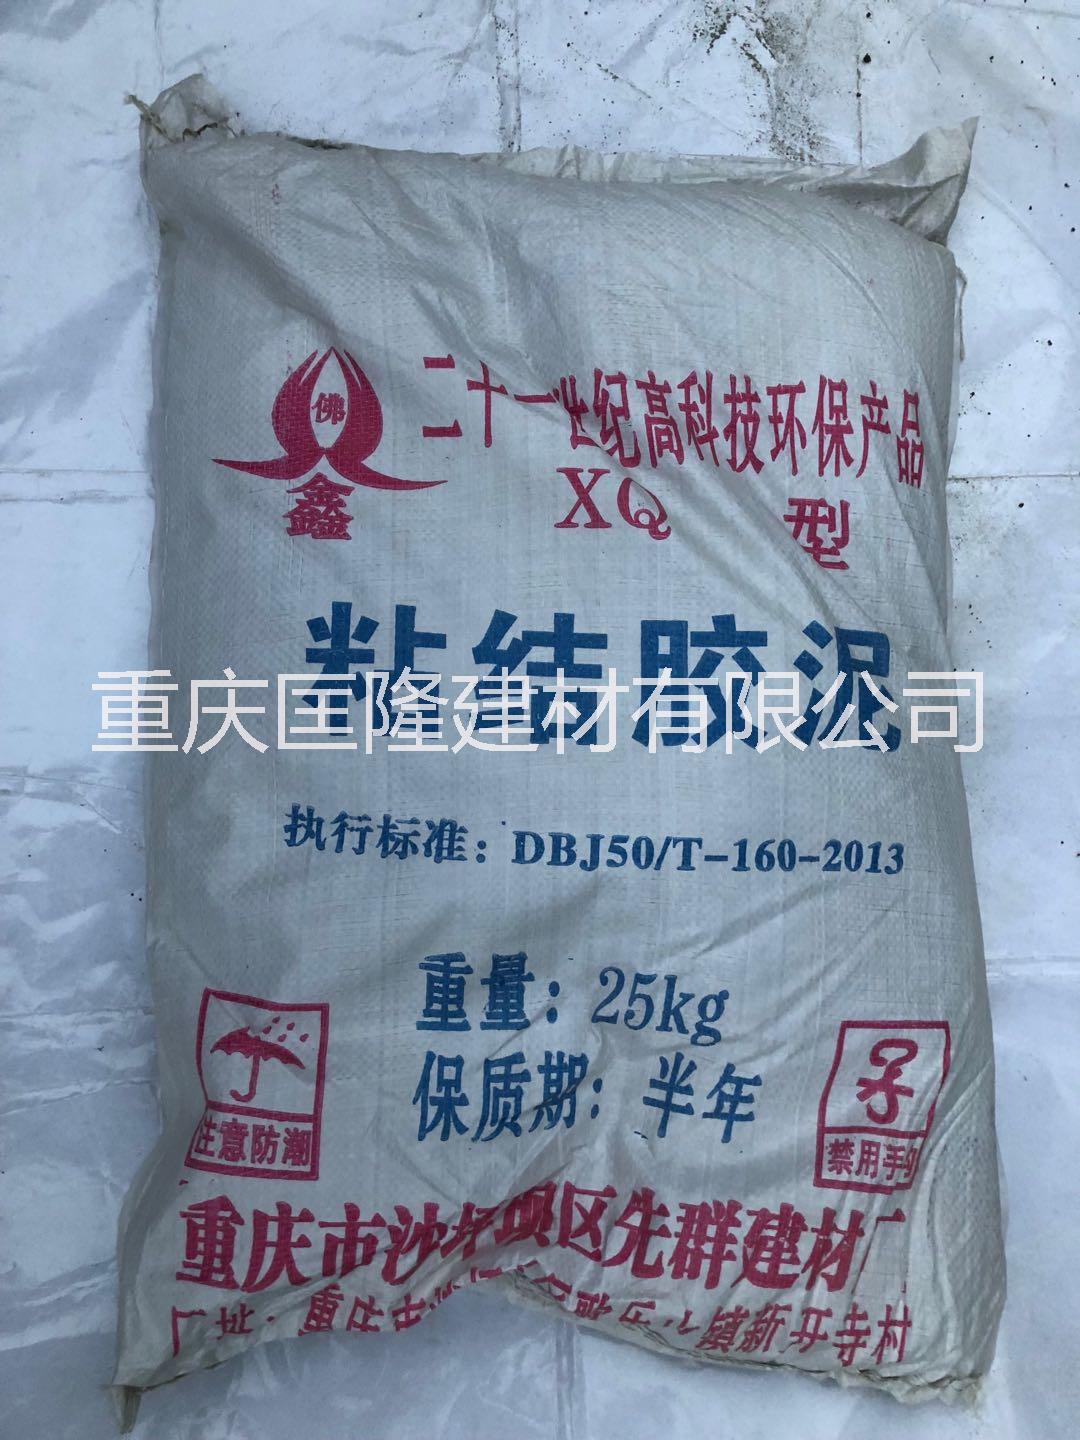 重庆聚合物粘结砂浆 厂家专业批发粘结胶泥 聚合物粘结砂浆图片